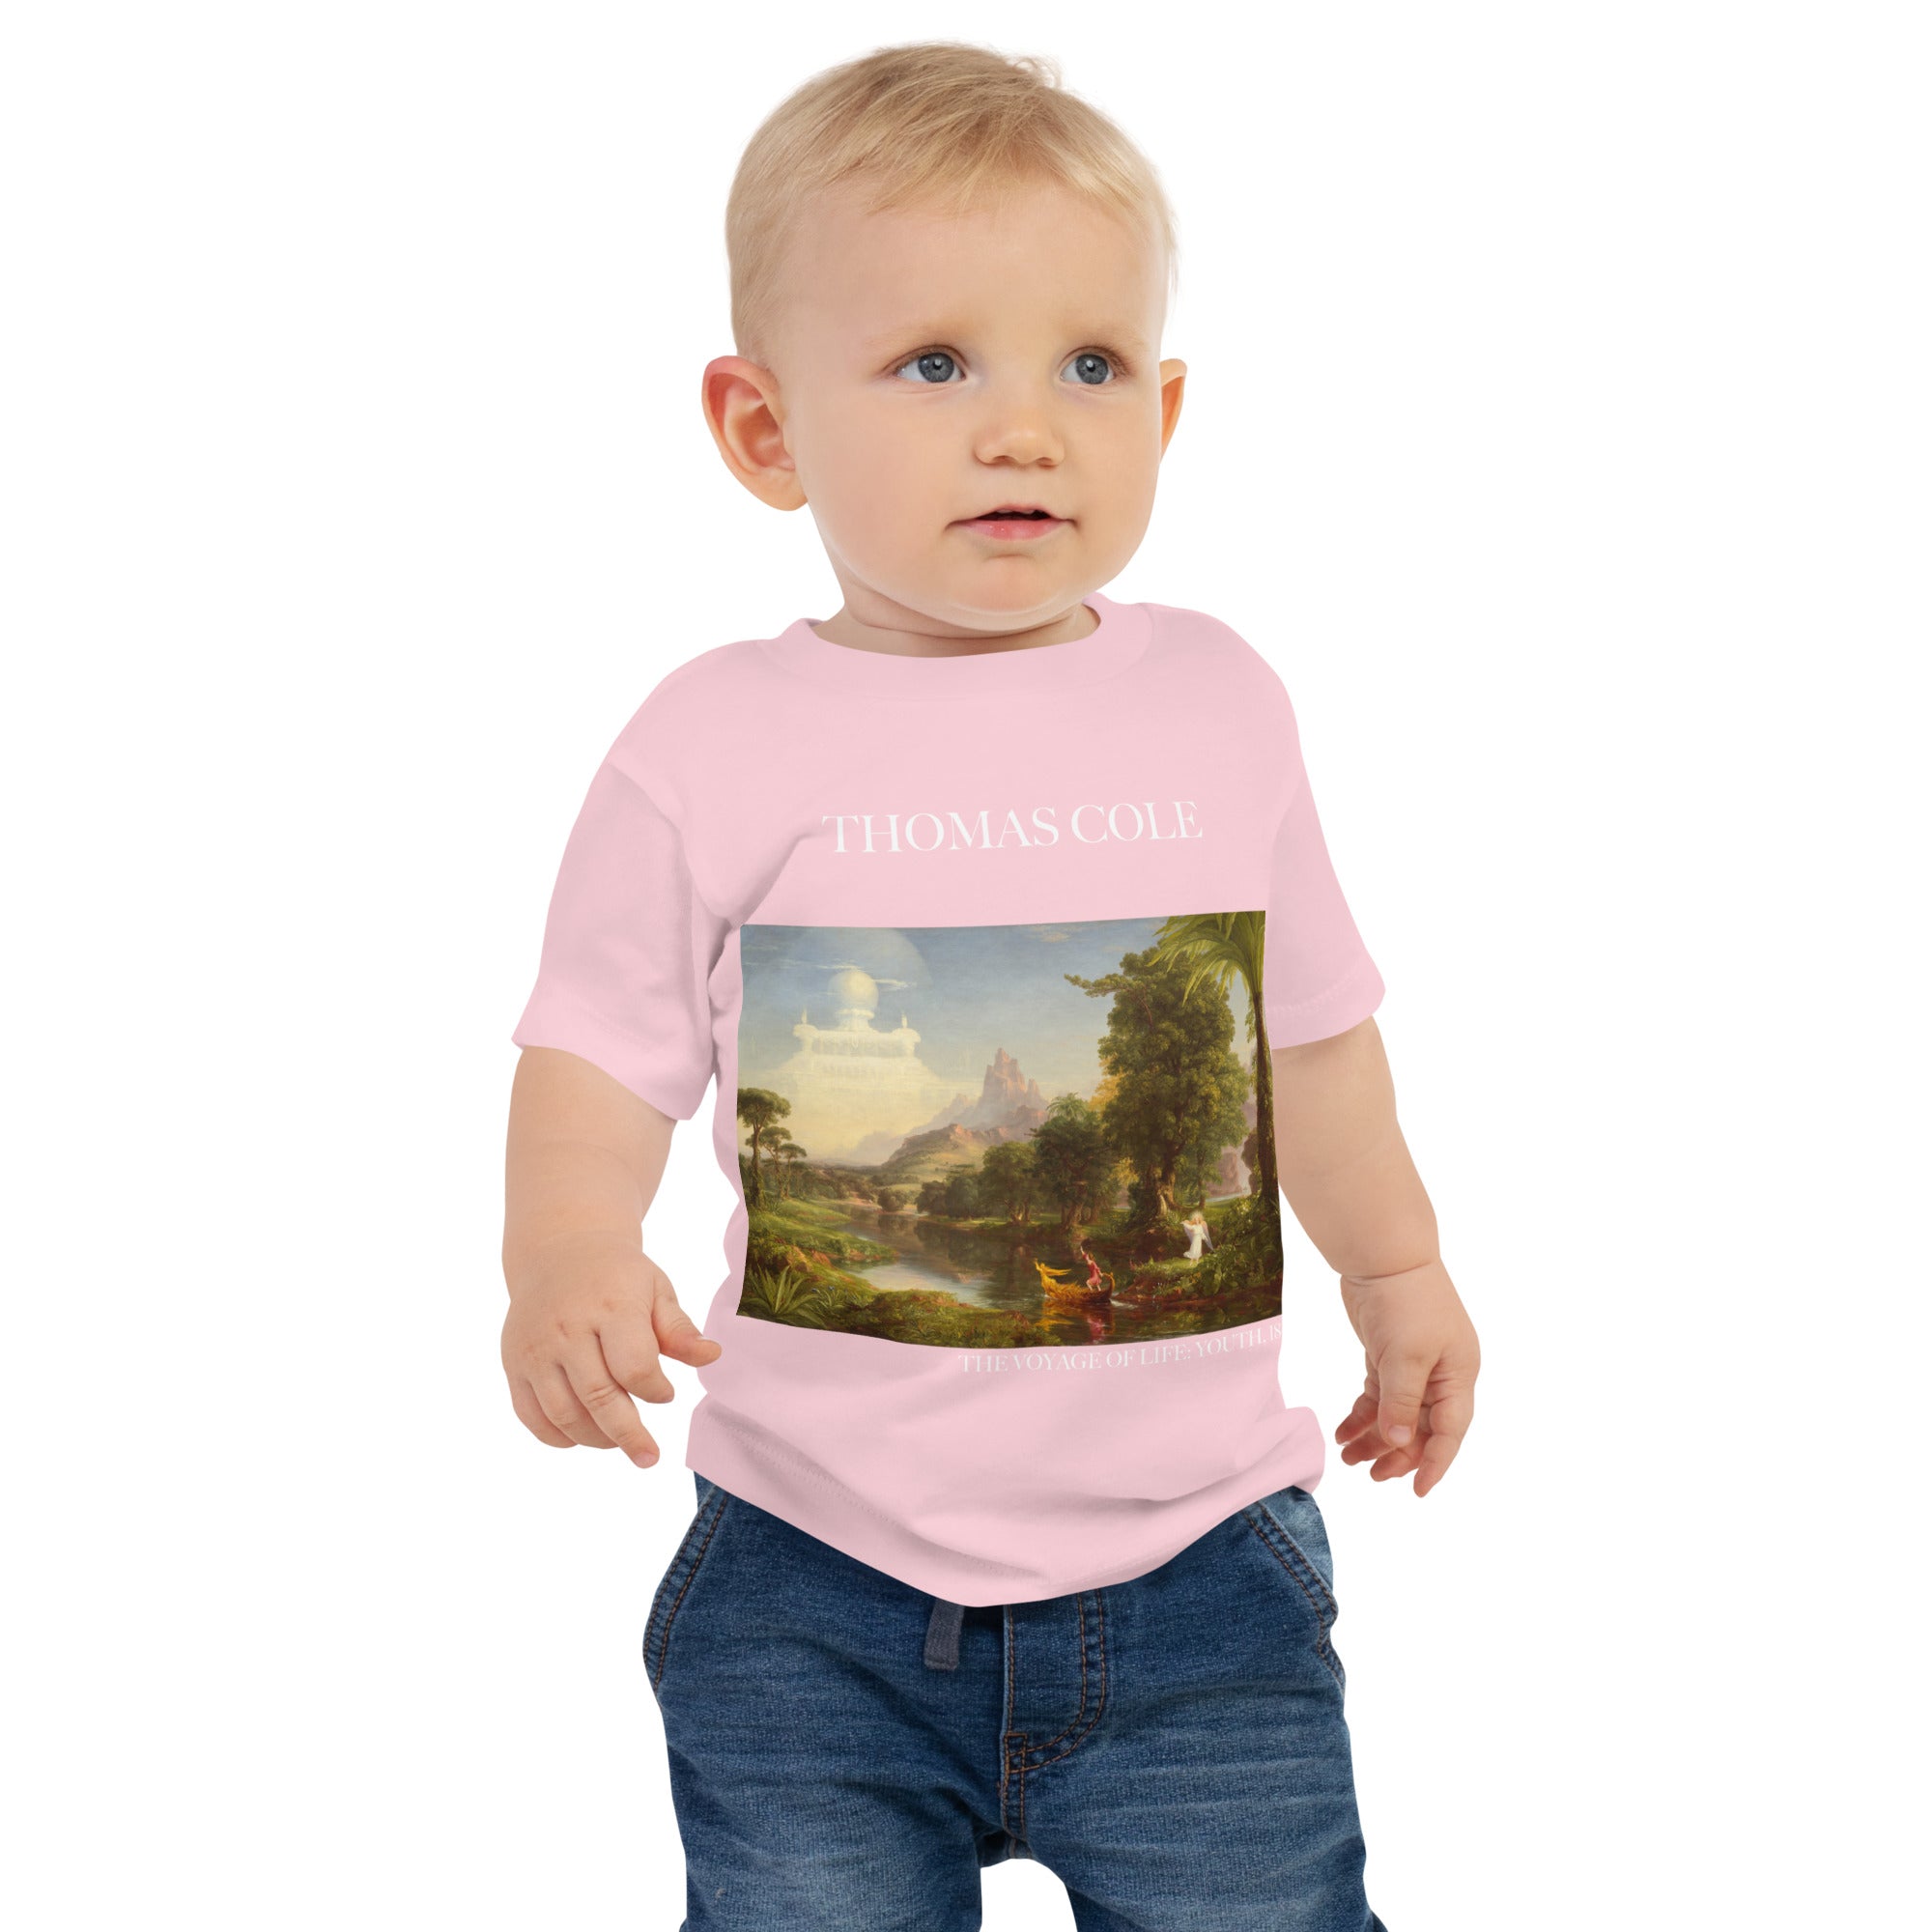 Thomas Cole „Die Reise des Lebens: Jugend“ Berühmtes Gemälde Baby-T-Shirt | Premium Baby Art T-Shirt